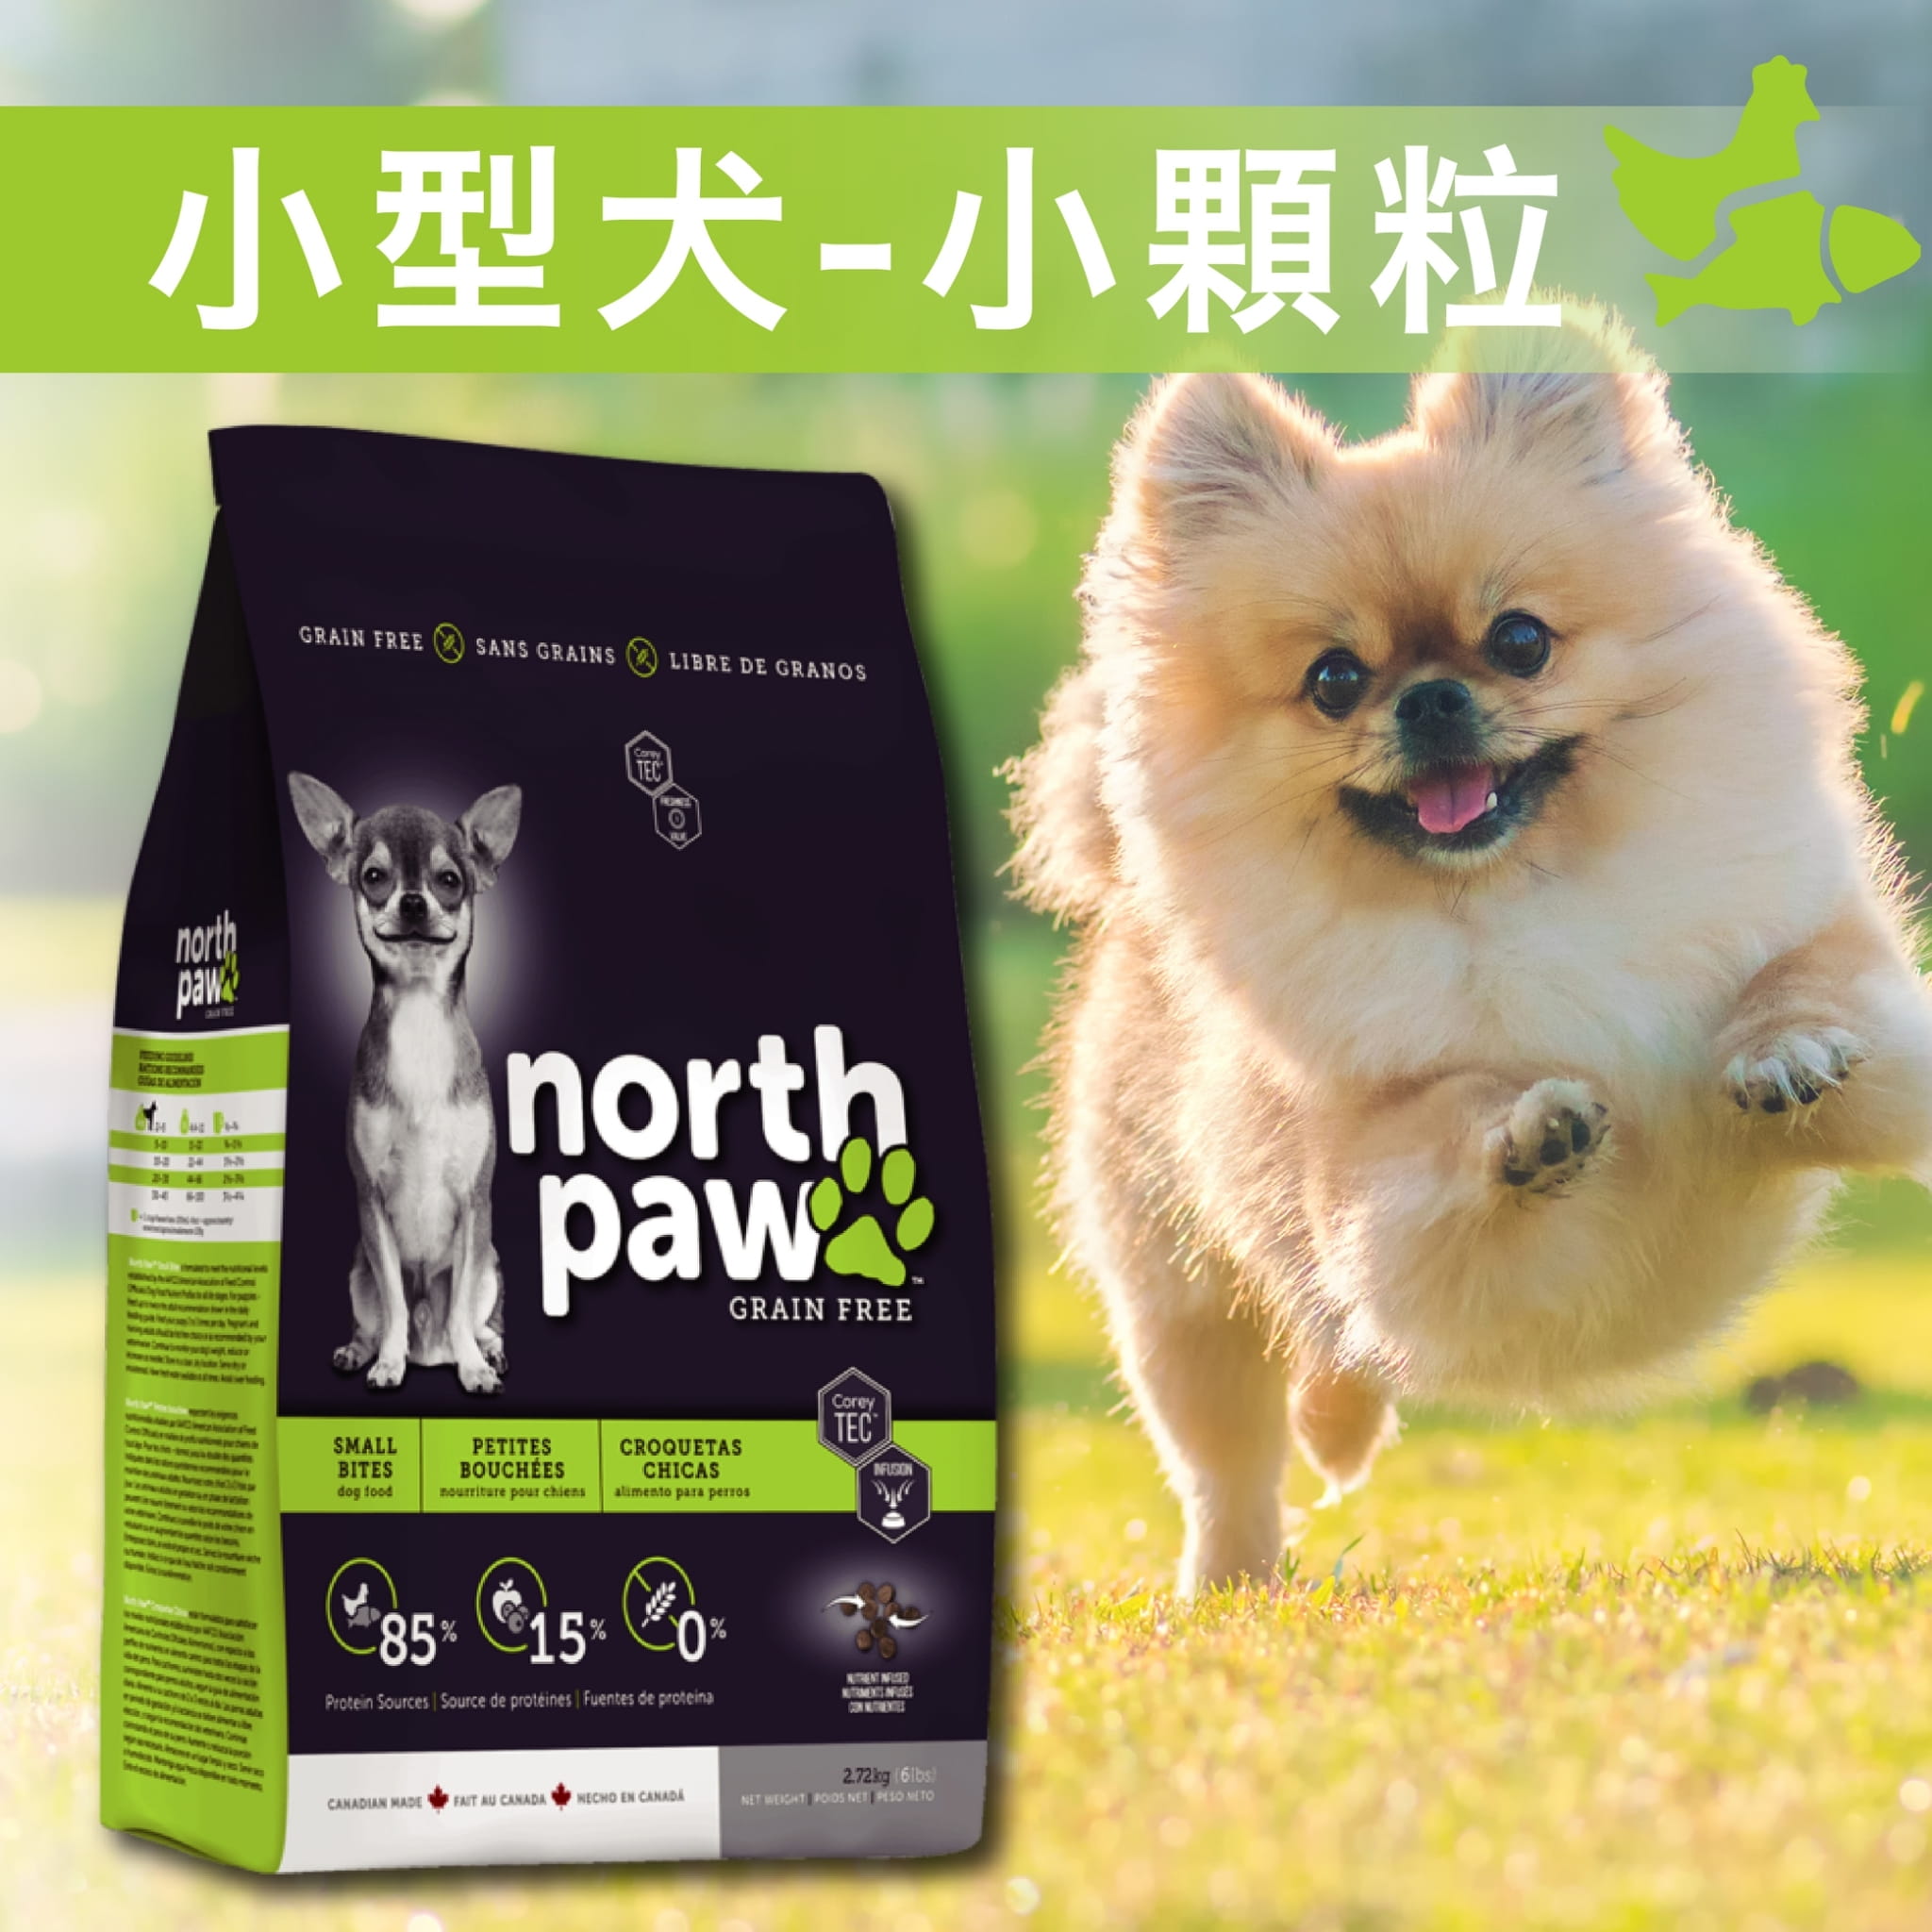 【野牧鮮食northpaw】小型犬飼料(小顆粒)5.8kg